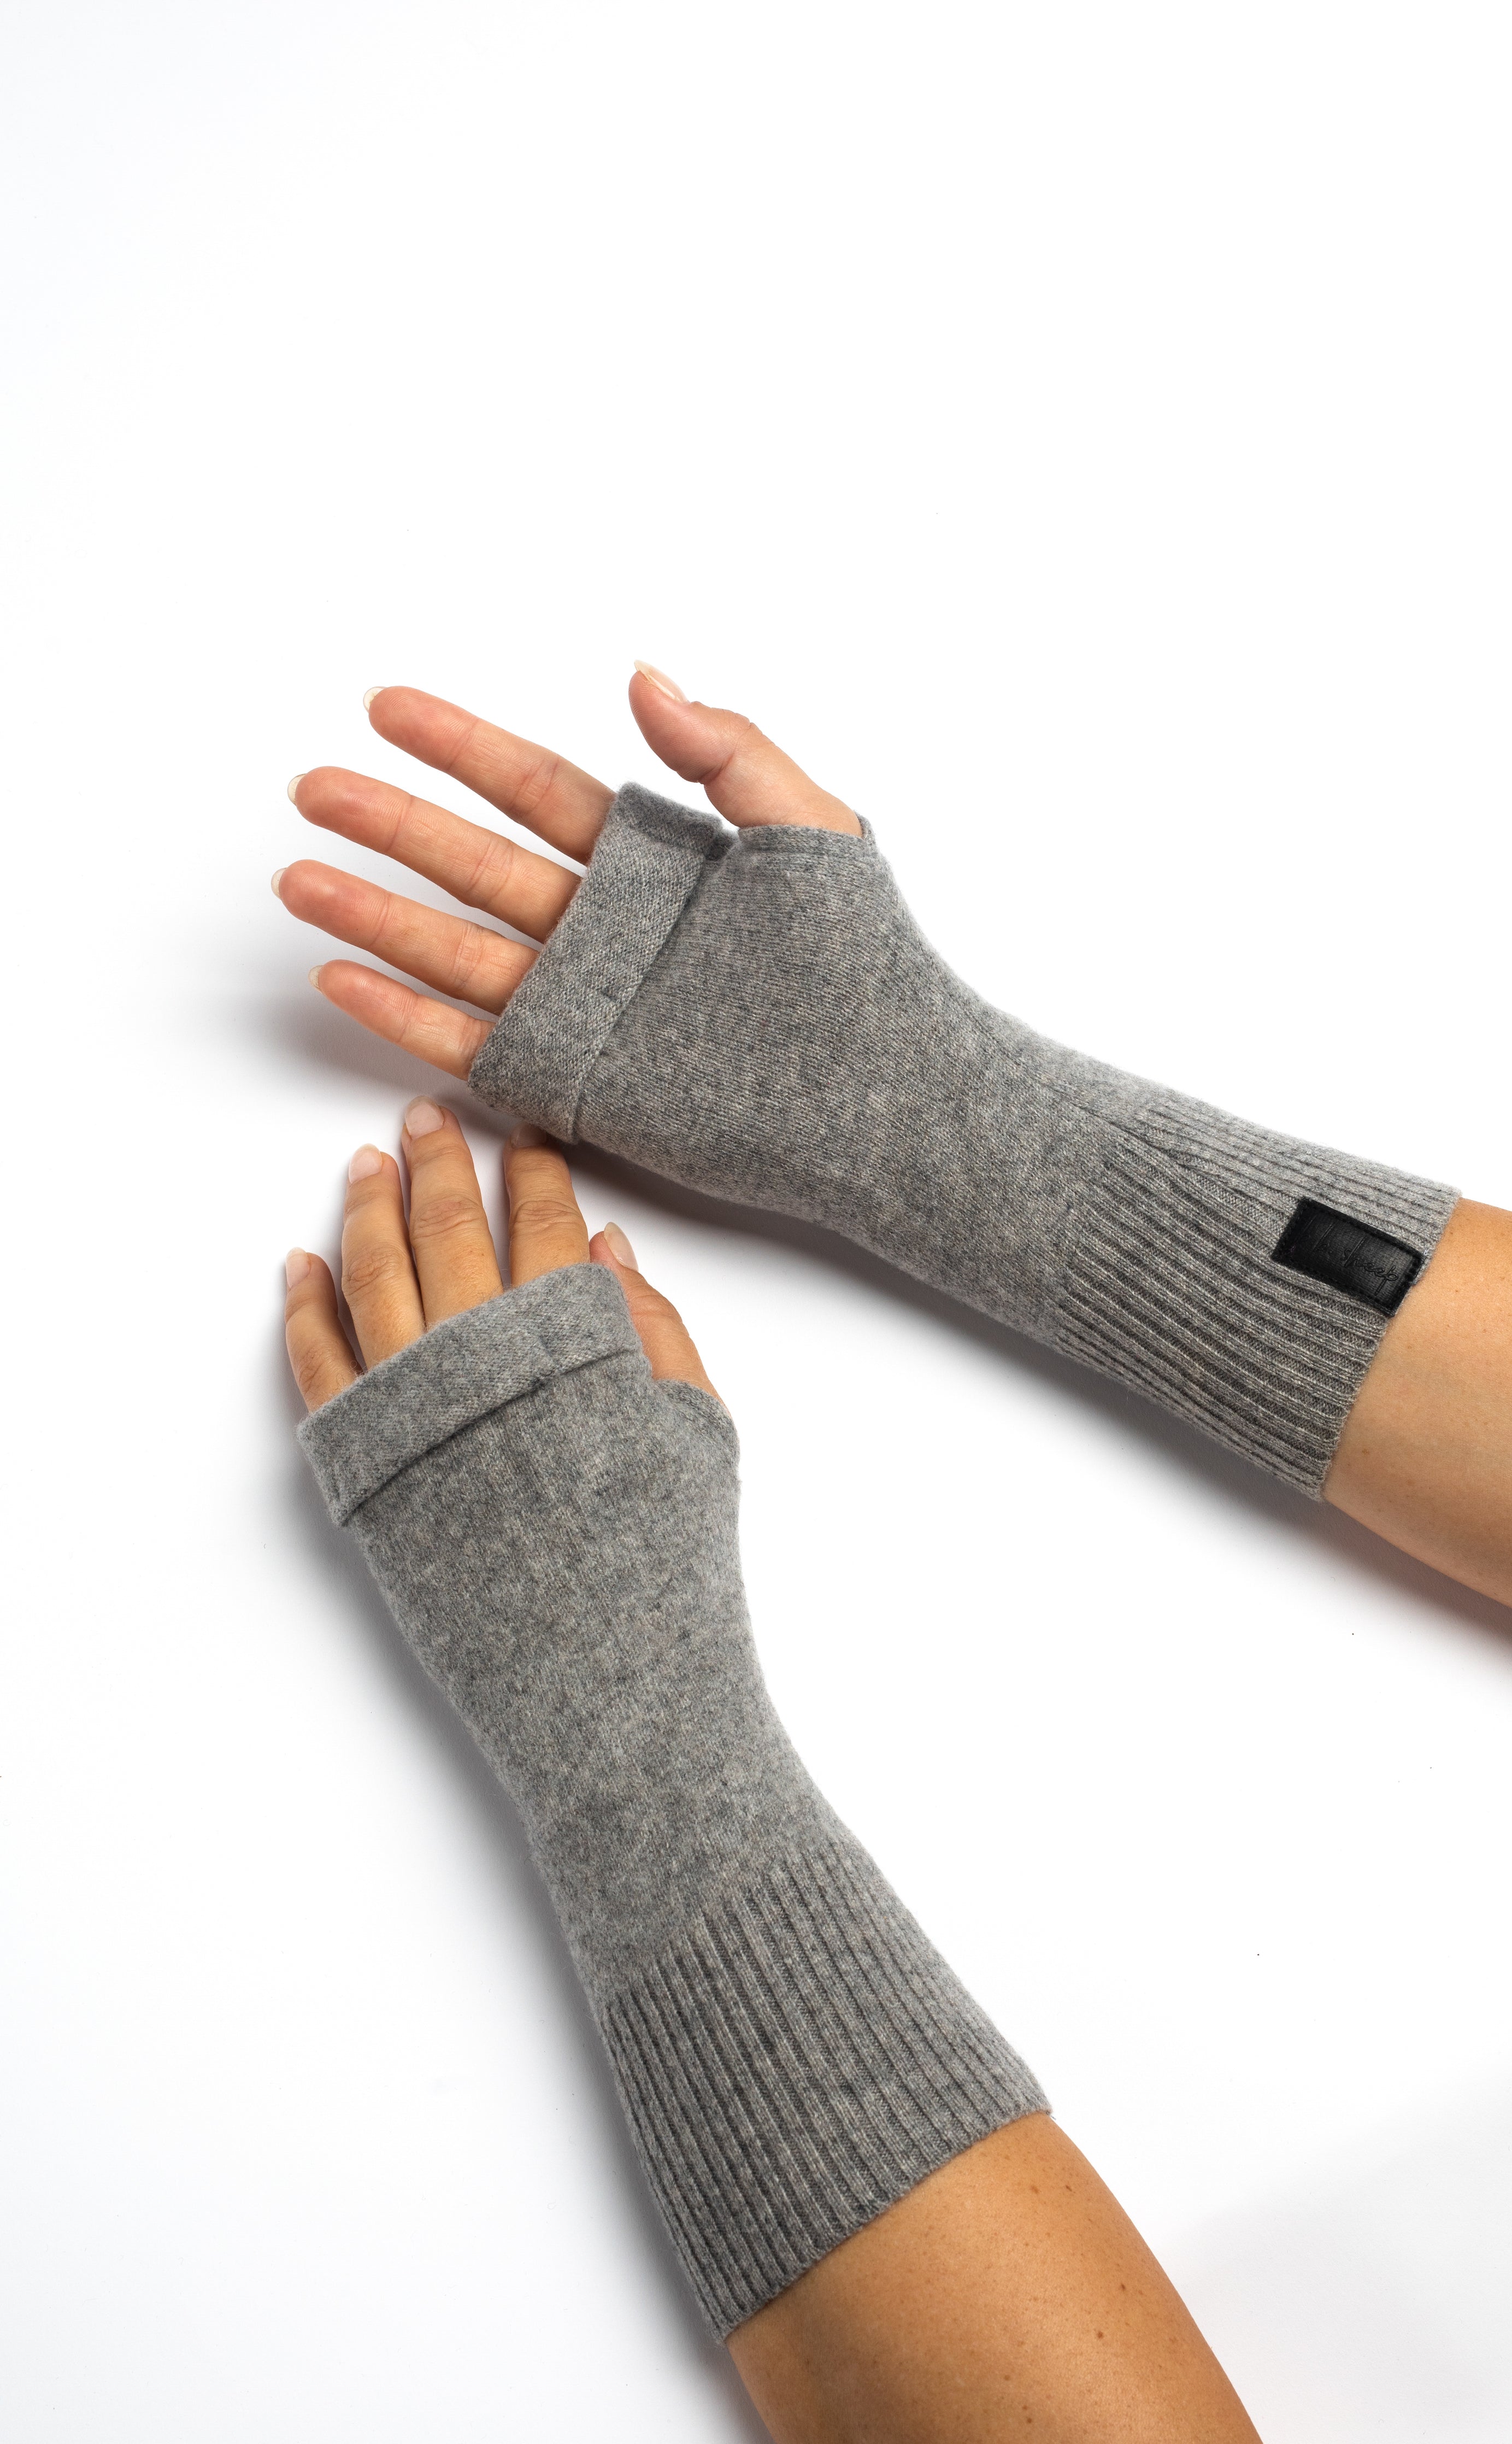 Basics Fingerless Gloves Set - Black, Gray and Light Gray Box of 3